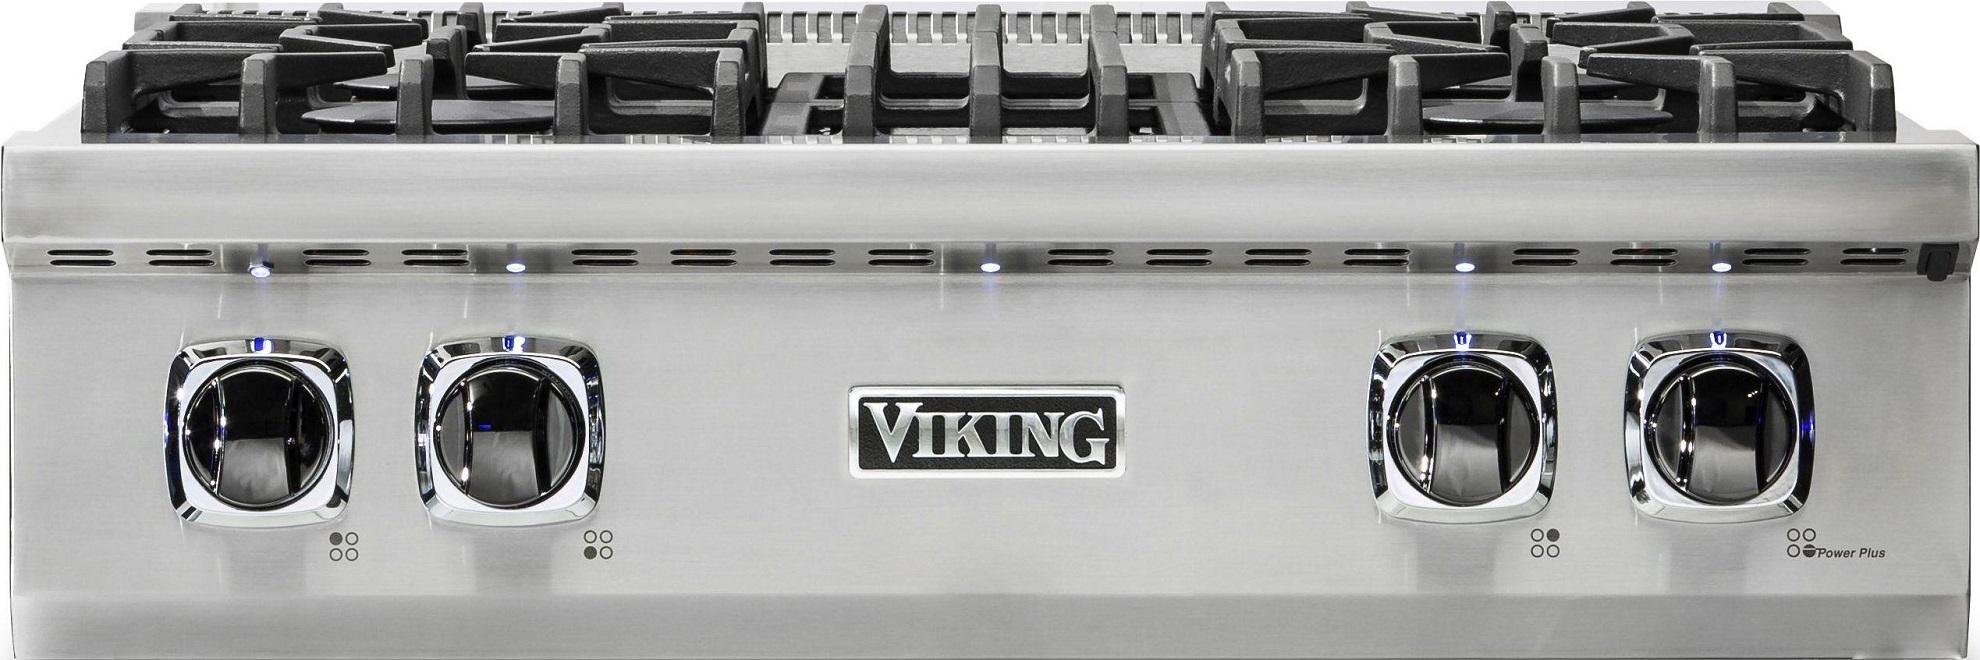 Viking VRT5304BSSLP